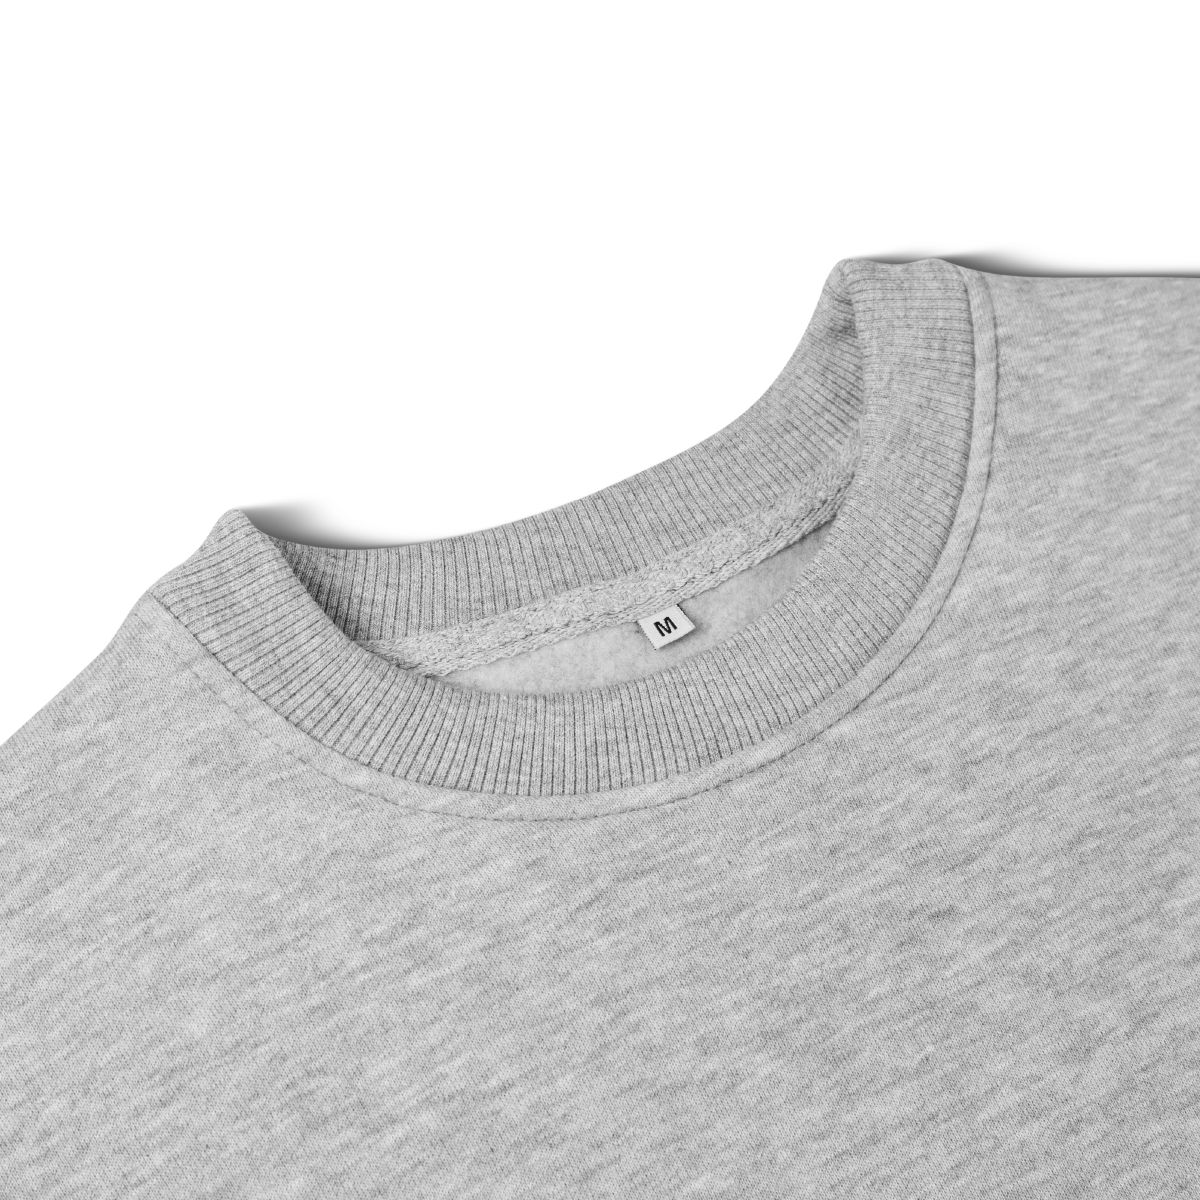 Світшот Base Soft Sweatshirt. Вільний стиль. Колір Сірий/Gray. Розмір M 7